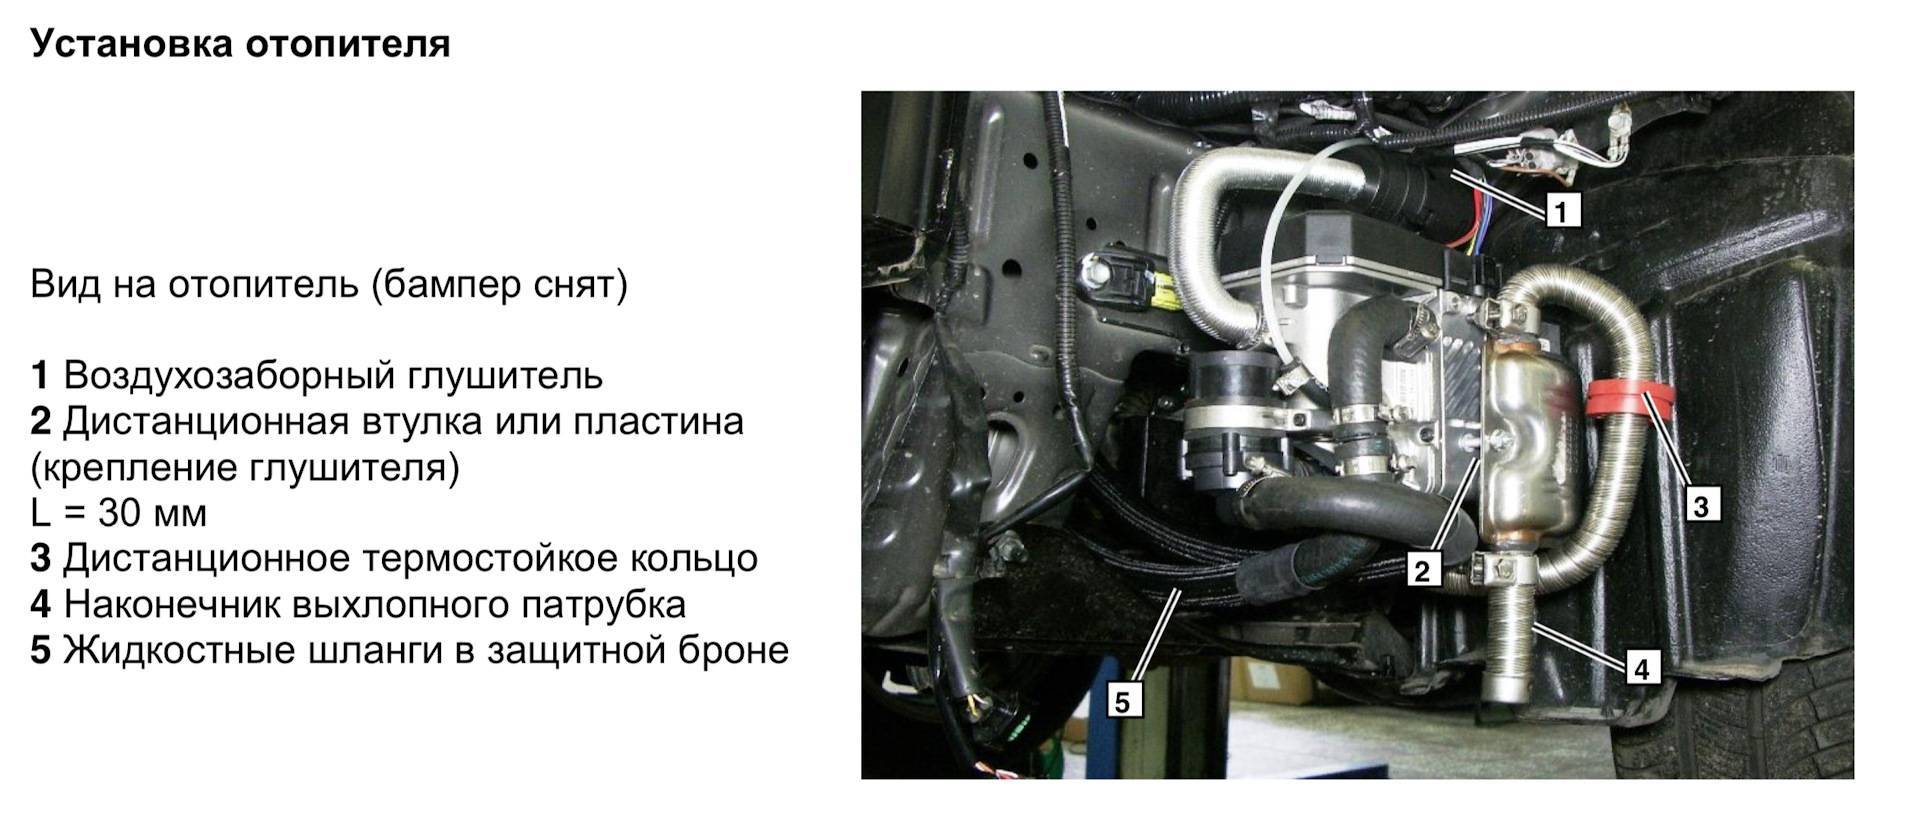 Определение оптимального местоположения для установки системы отопления автомобилей